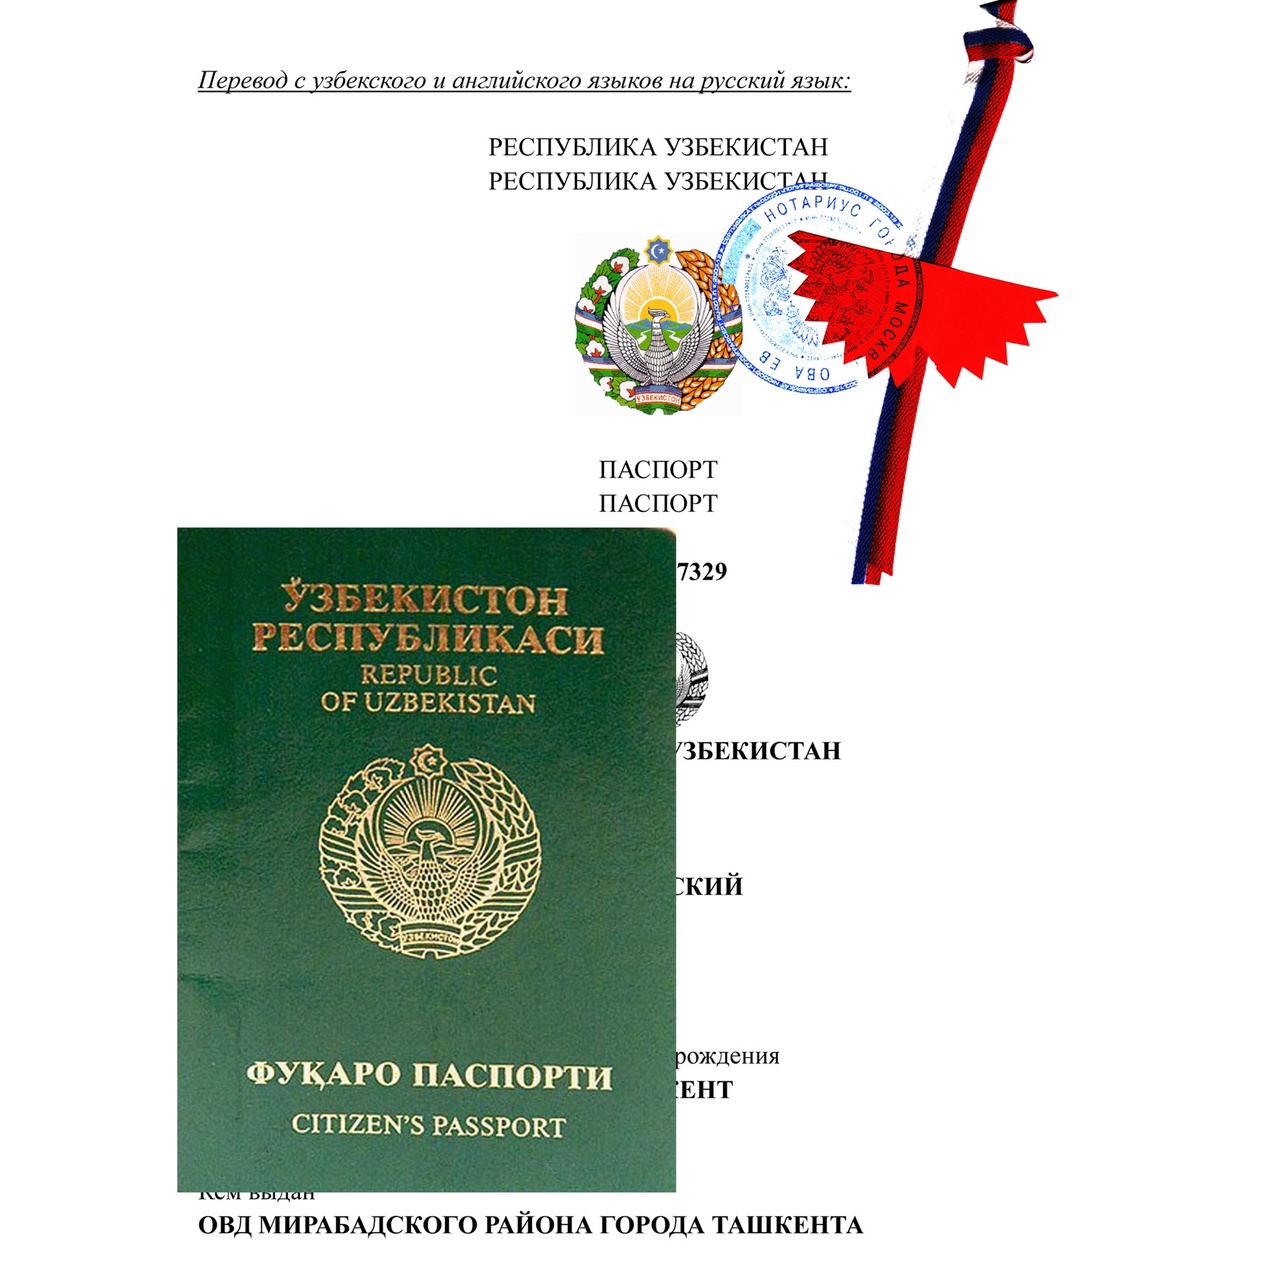 Как осуществляется нотариальный перевод паспорта?